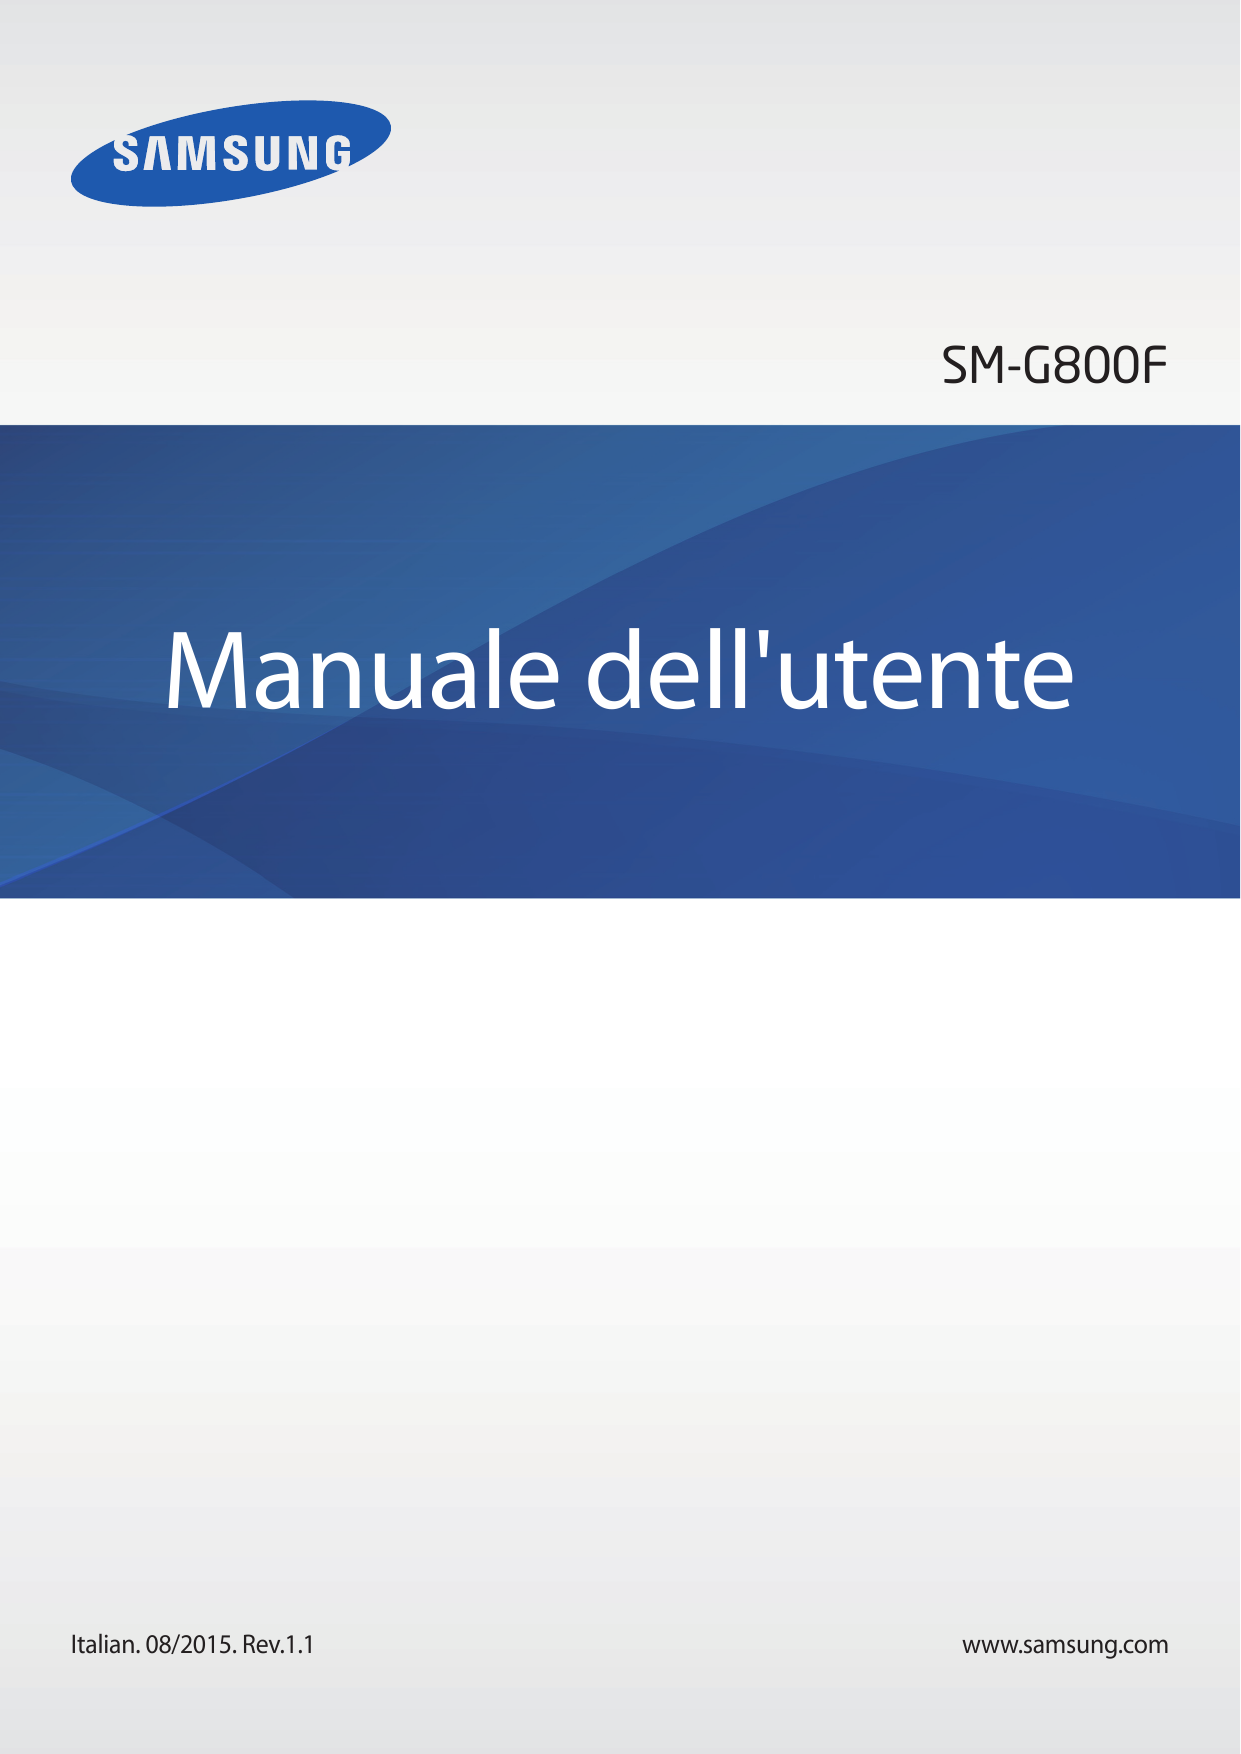 SM-G800FManuale dell'utenteItalian. 08/2015. Rev.1.1www.samsung.com